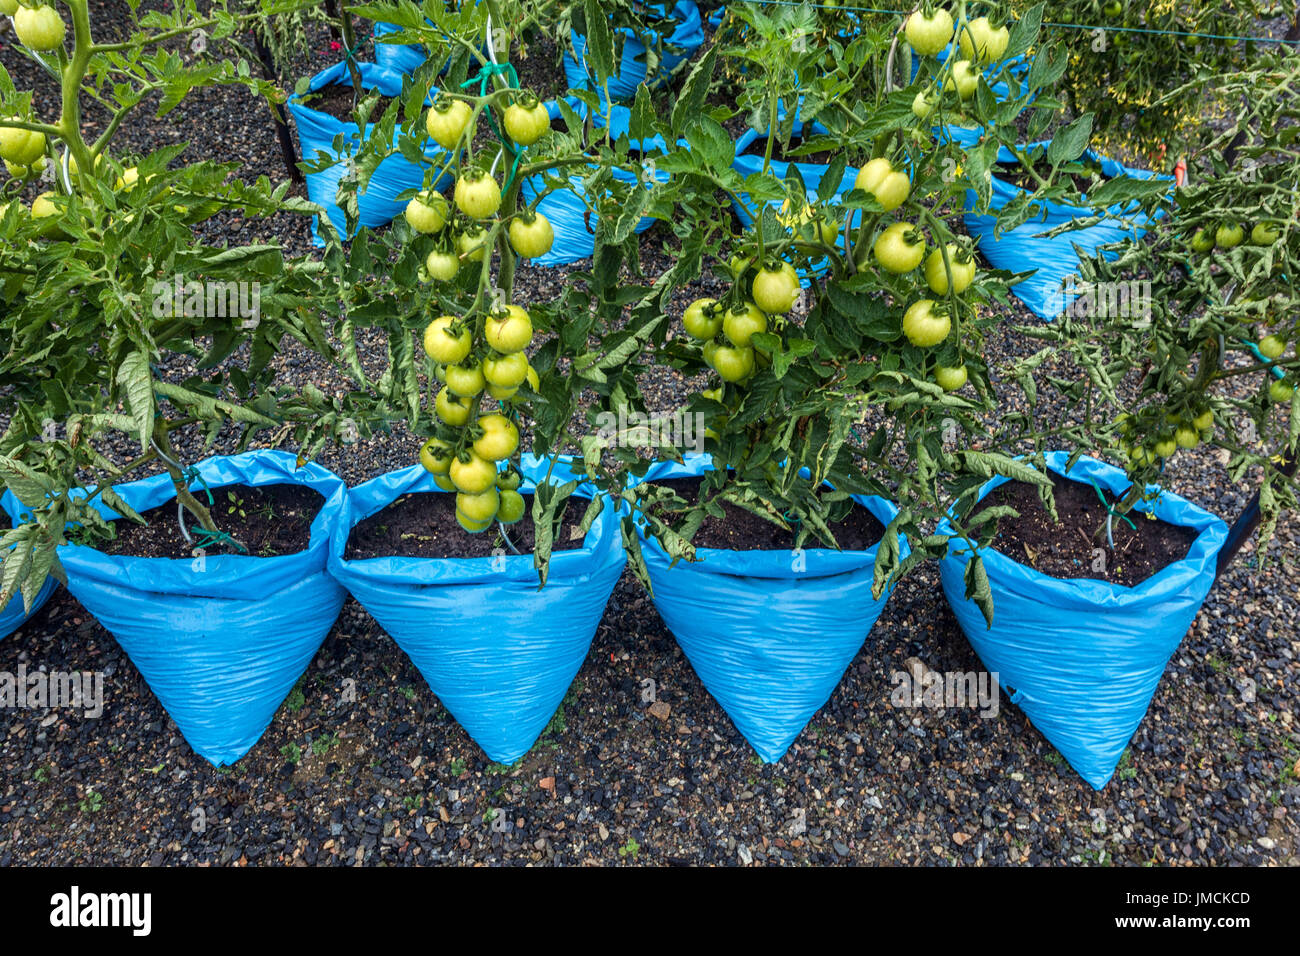 Tomates verdes madurando creciendo en bolsas de plástico, jardín de distribución de verduras Foto de stock